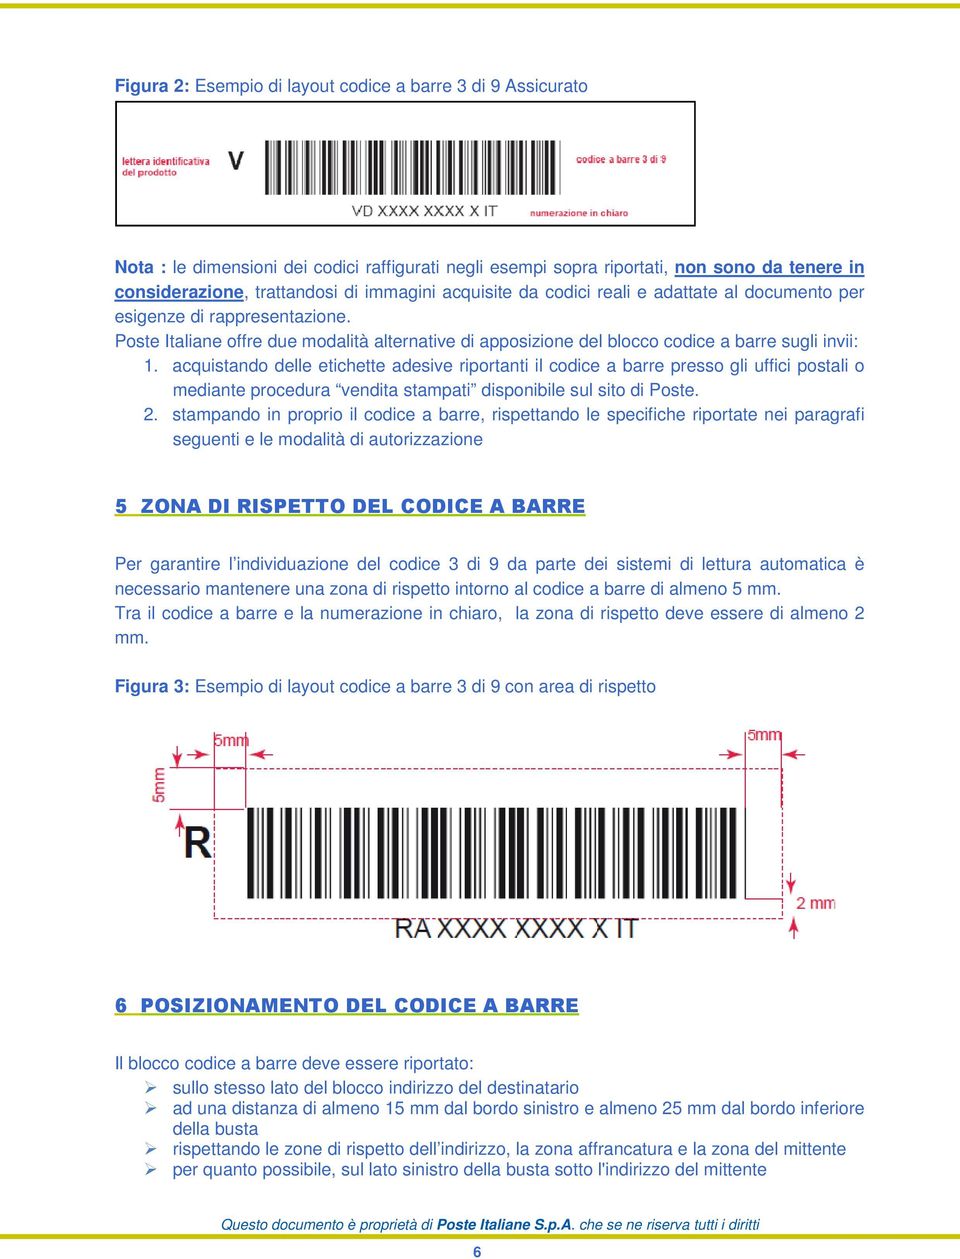 acquistando delle etichette adesive riportanti il codice a barre presso gli uffici postali o mediante procedura vendita stampati disponibile sul sito di Poste. 2.